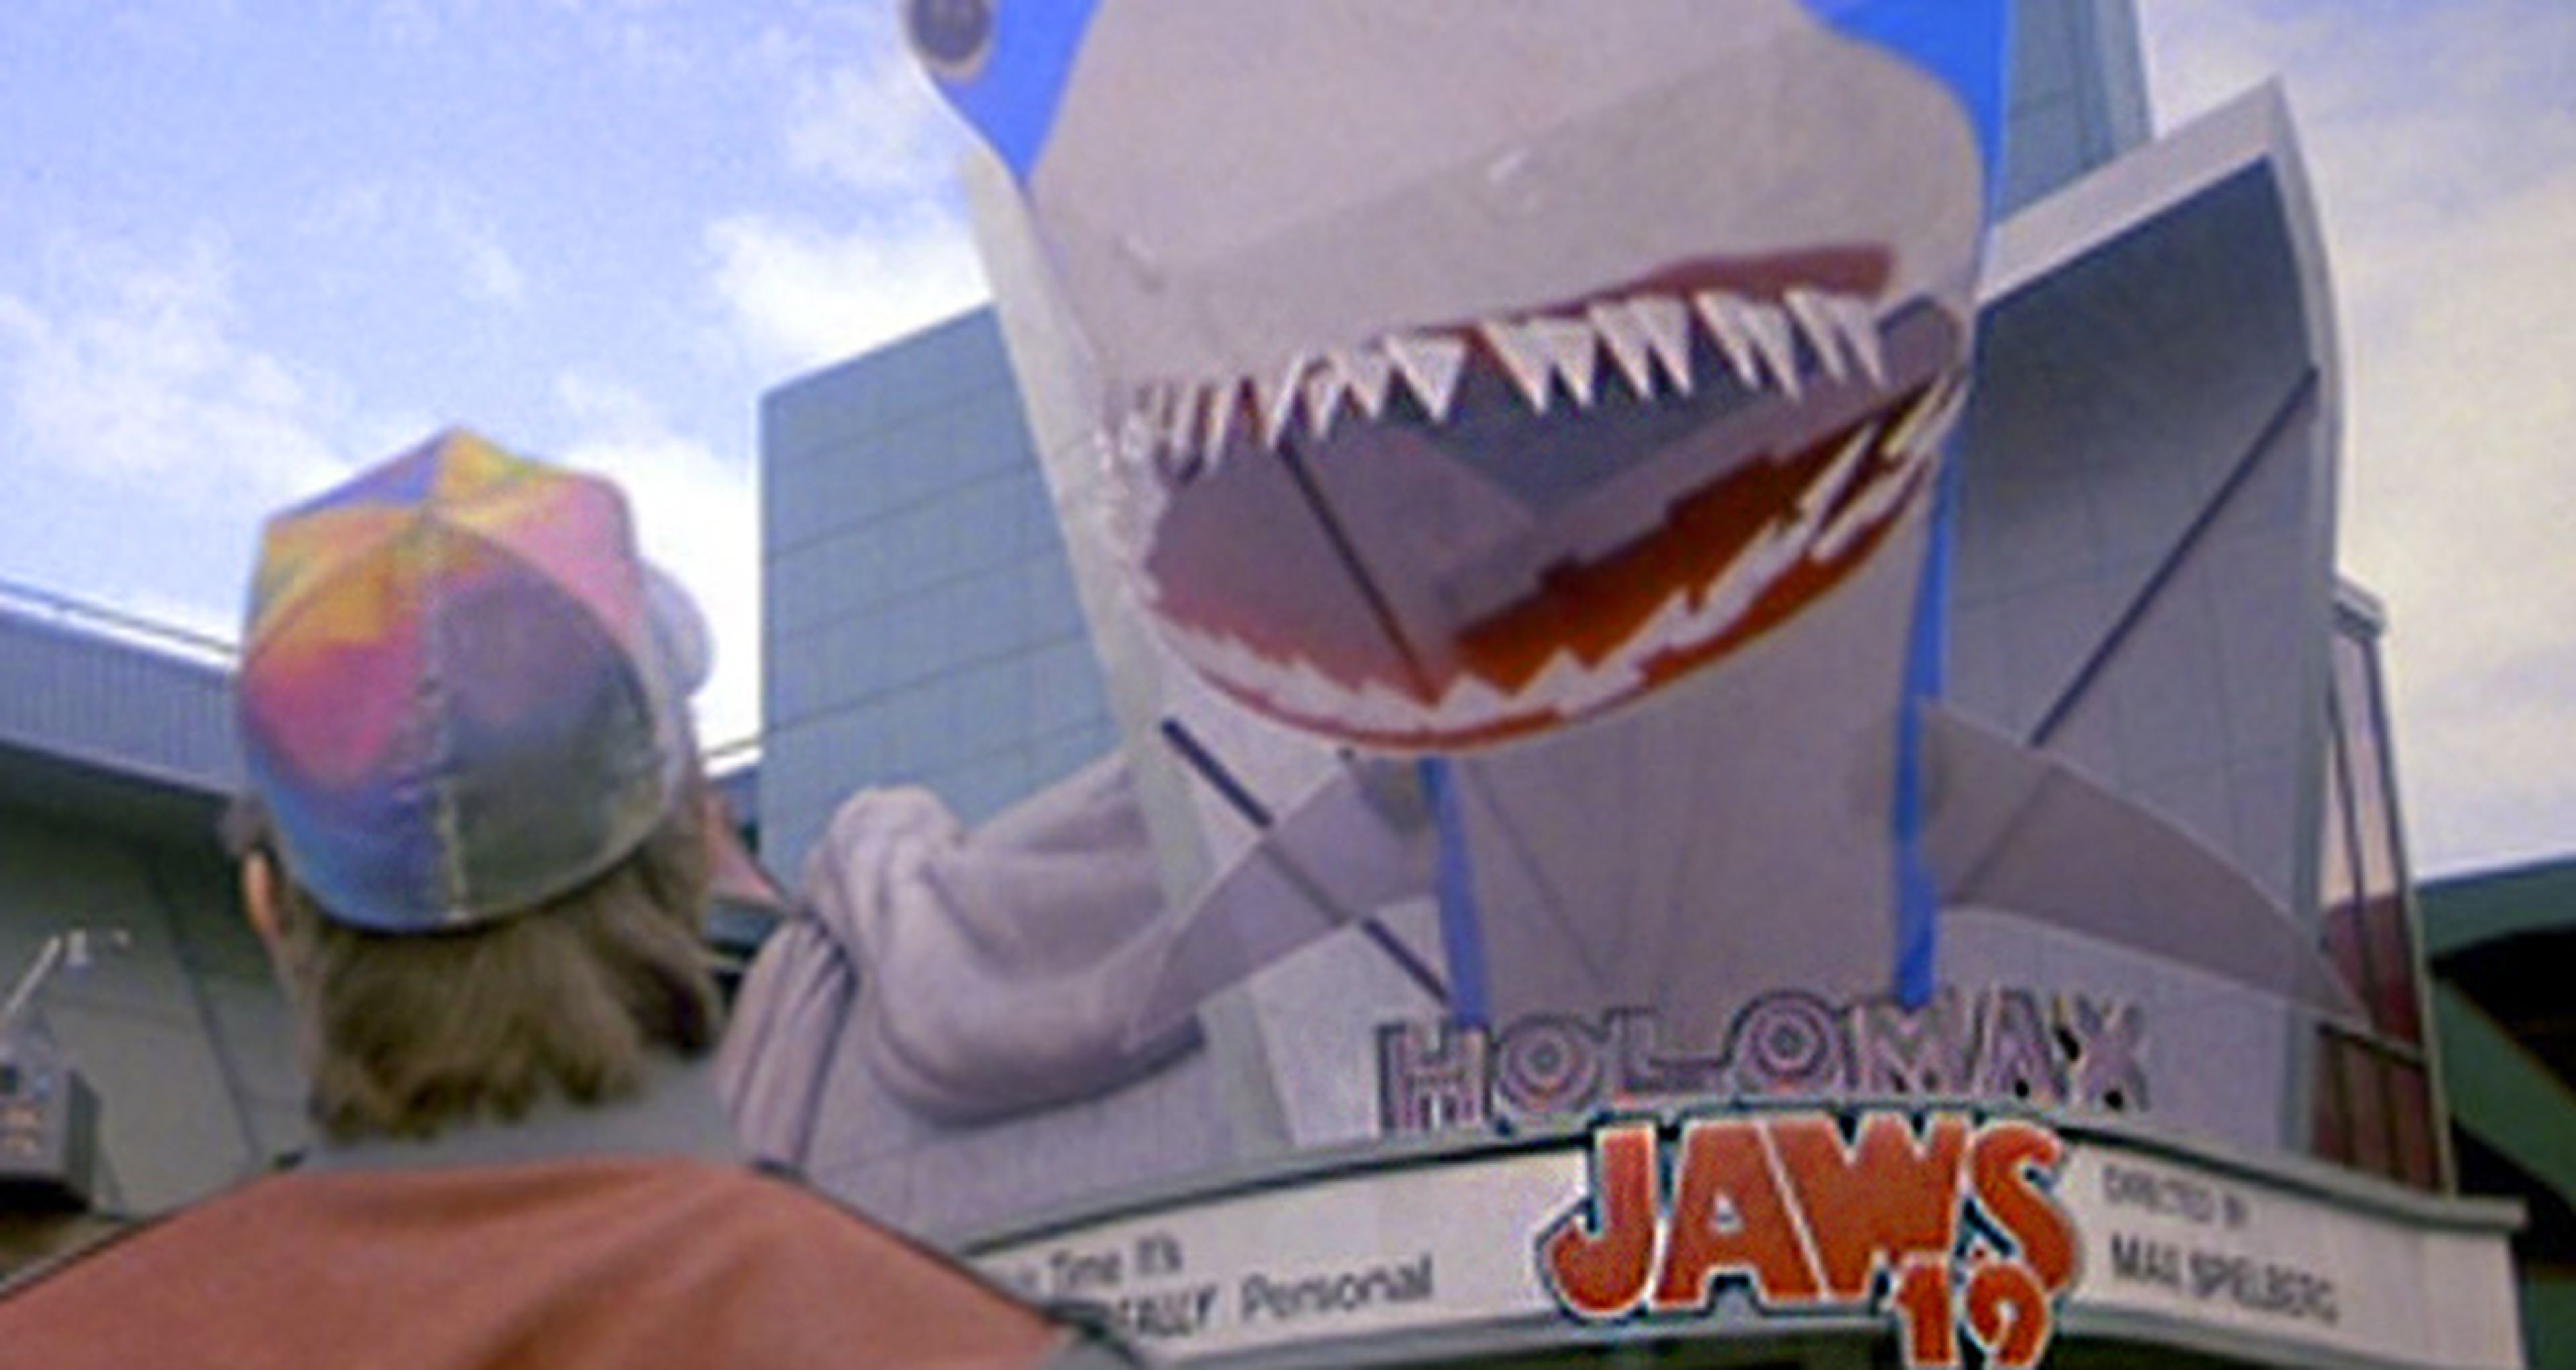 30 Aniversario Regreso al futuro: Universal lanza el tráiler de Jaws 19